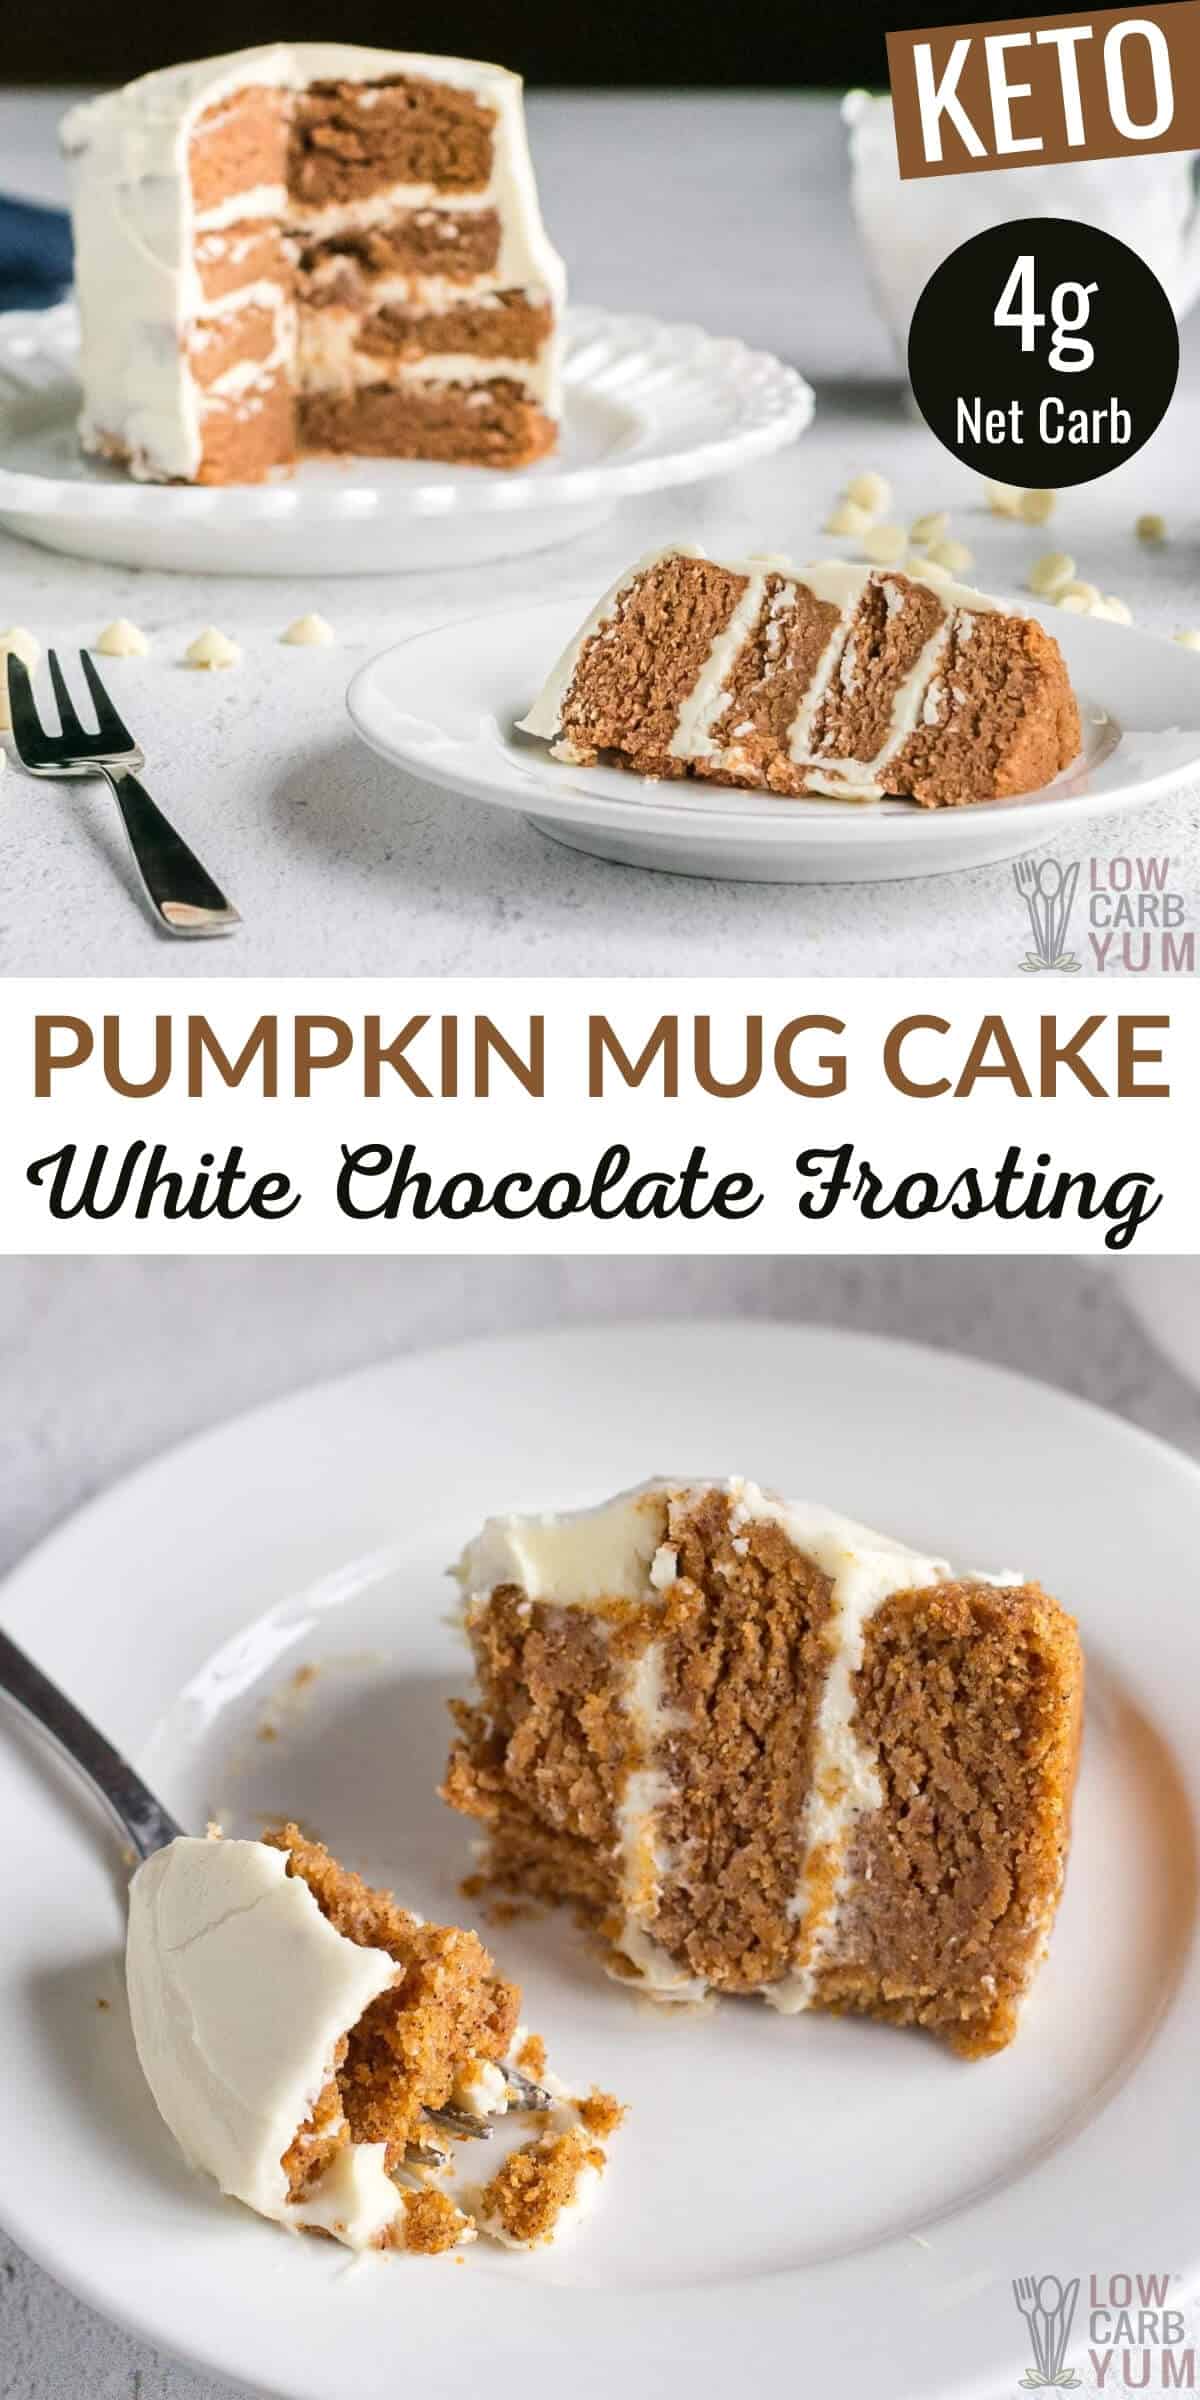 keto pumpkin mug cake recipe